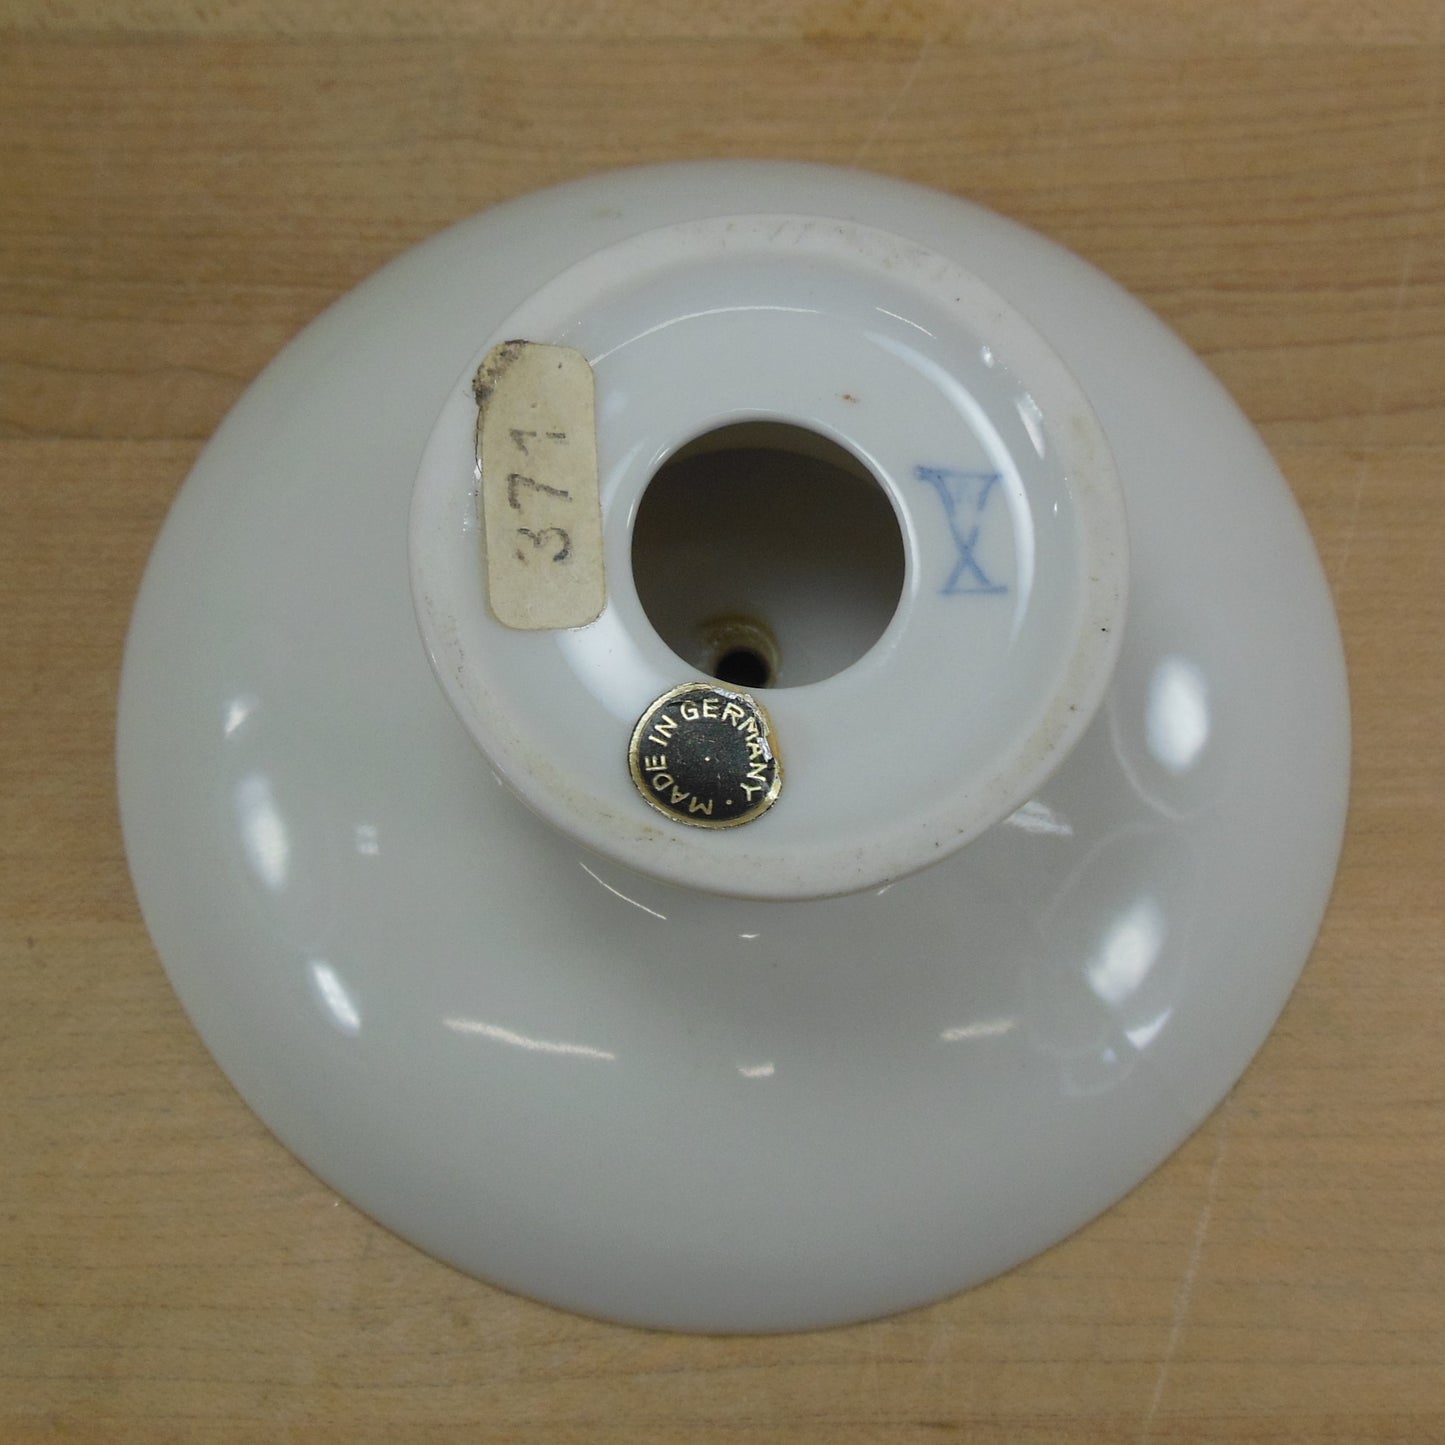 Helmut Krüger West Germany Small Orange White Porcelain Dish Candle Holder Original Labels